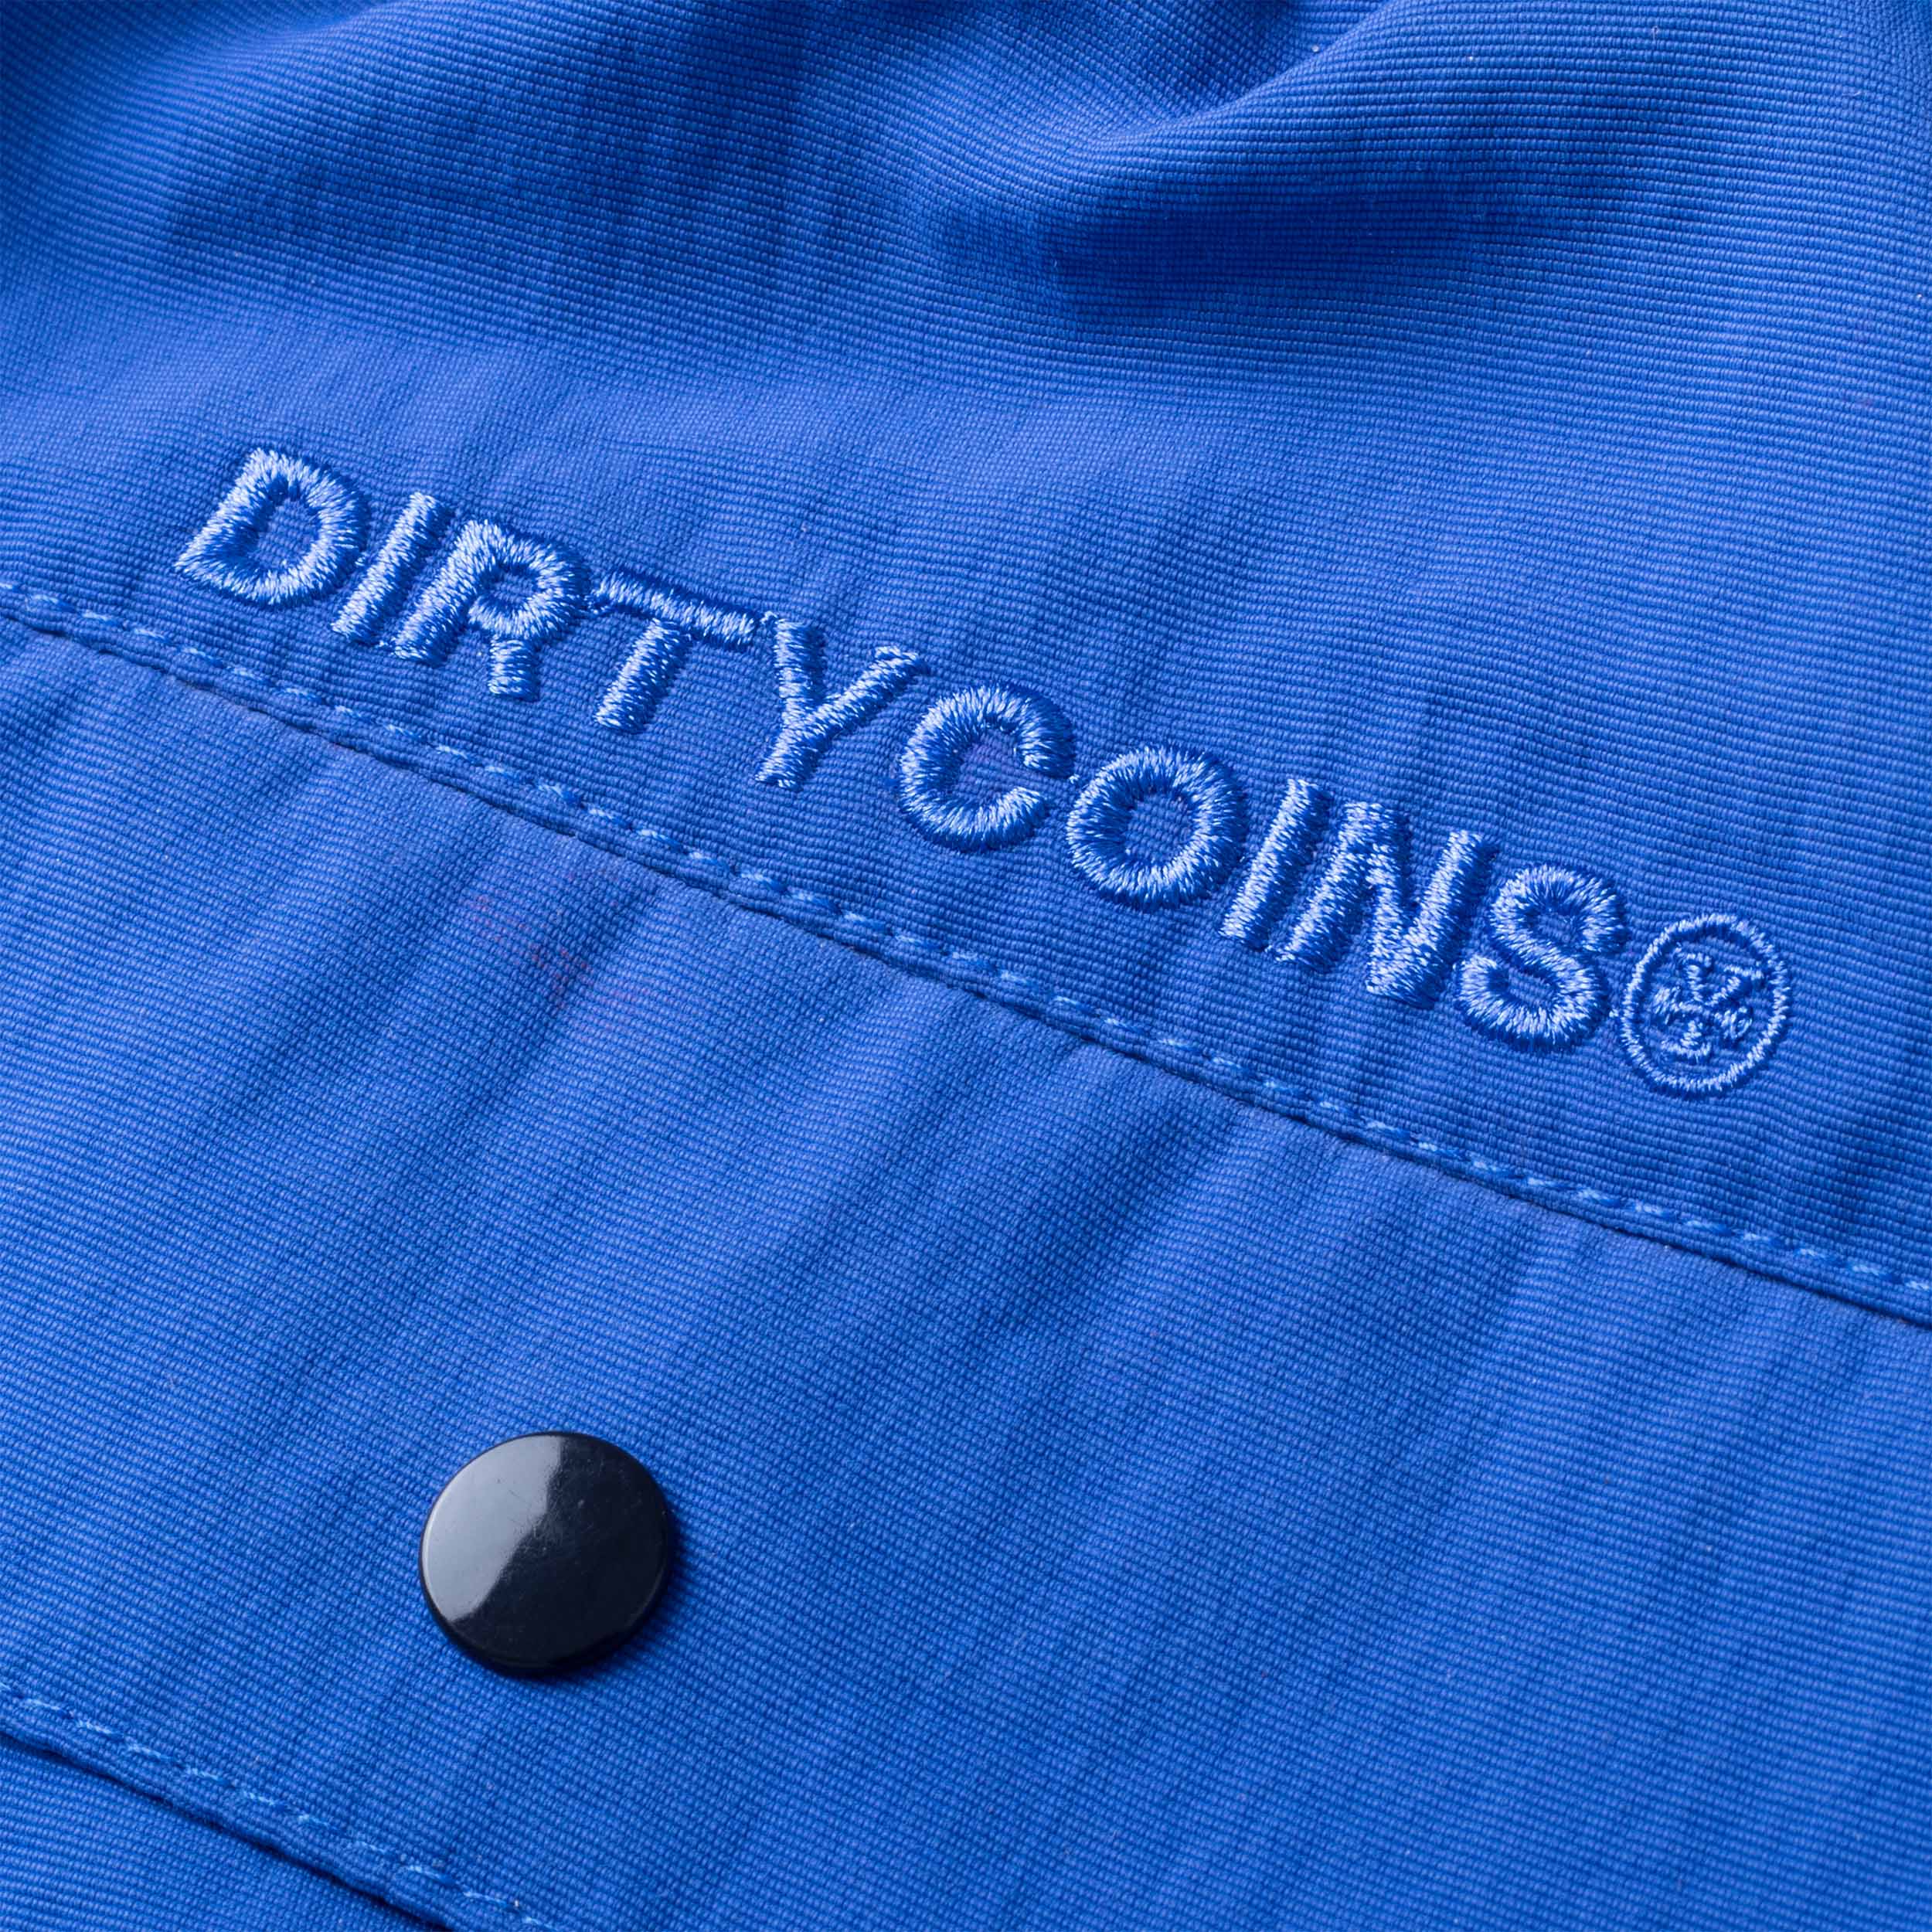 DirtyCoins x LilWuyn Flame Shorts - Blue